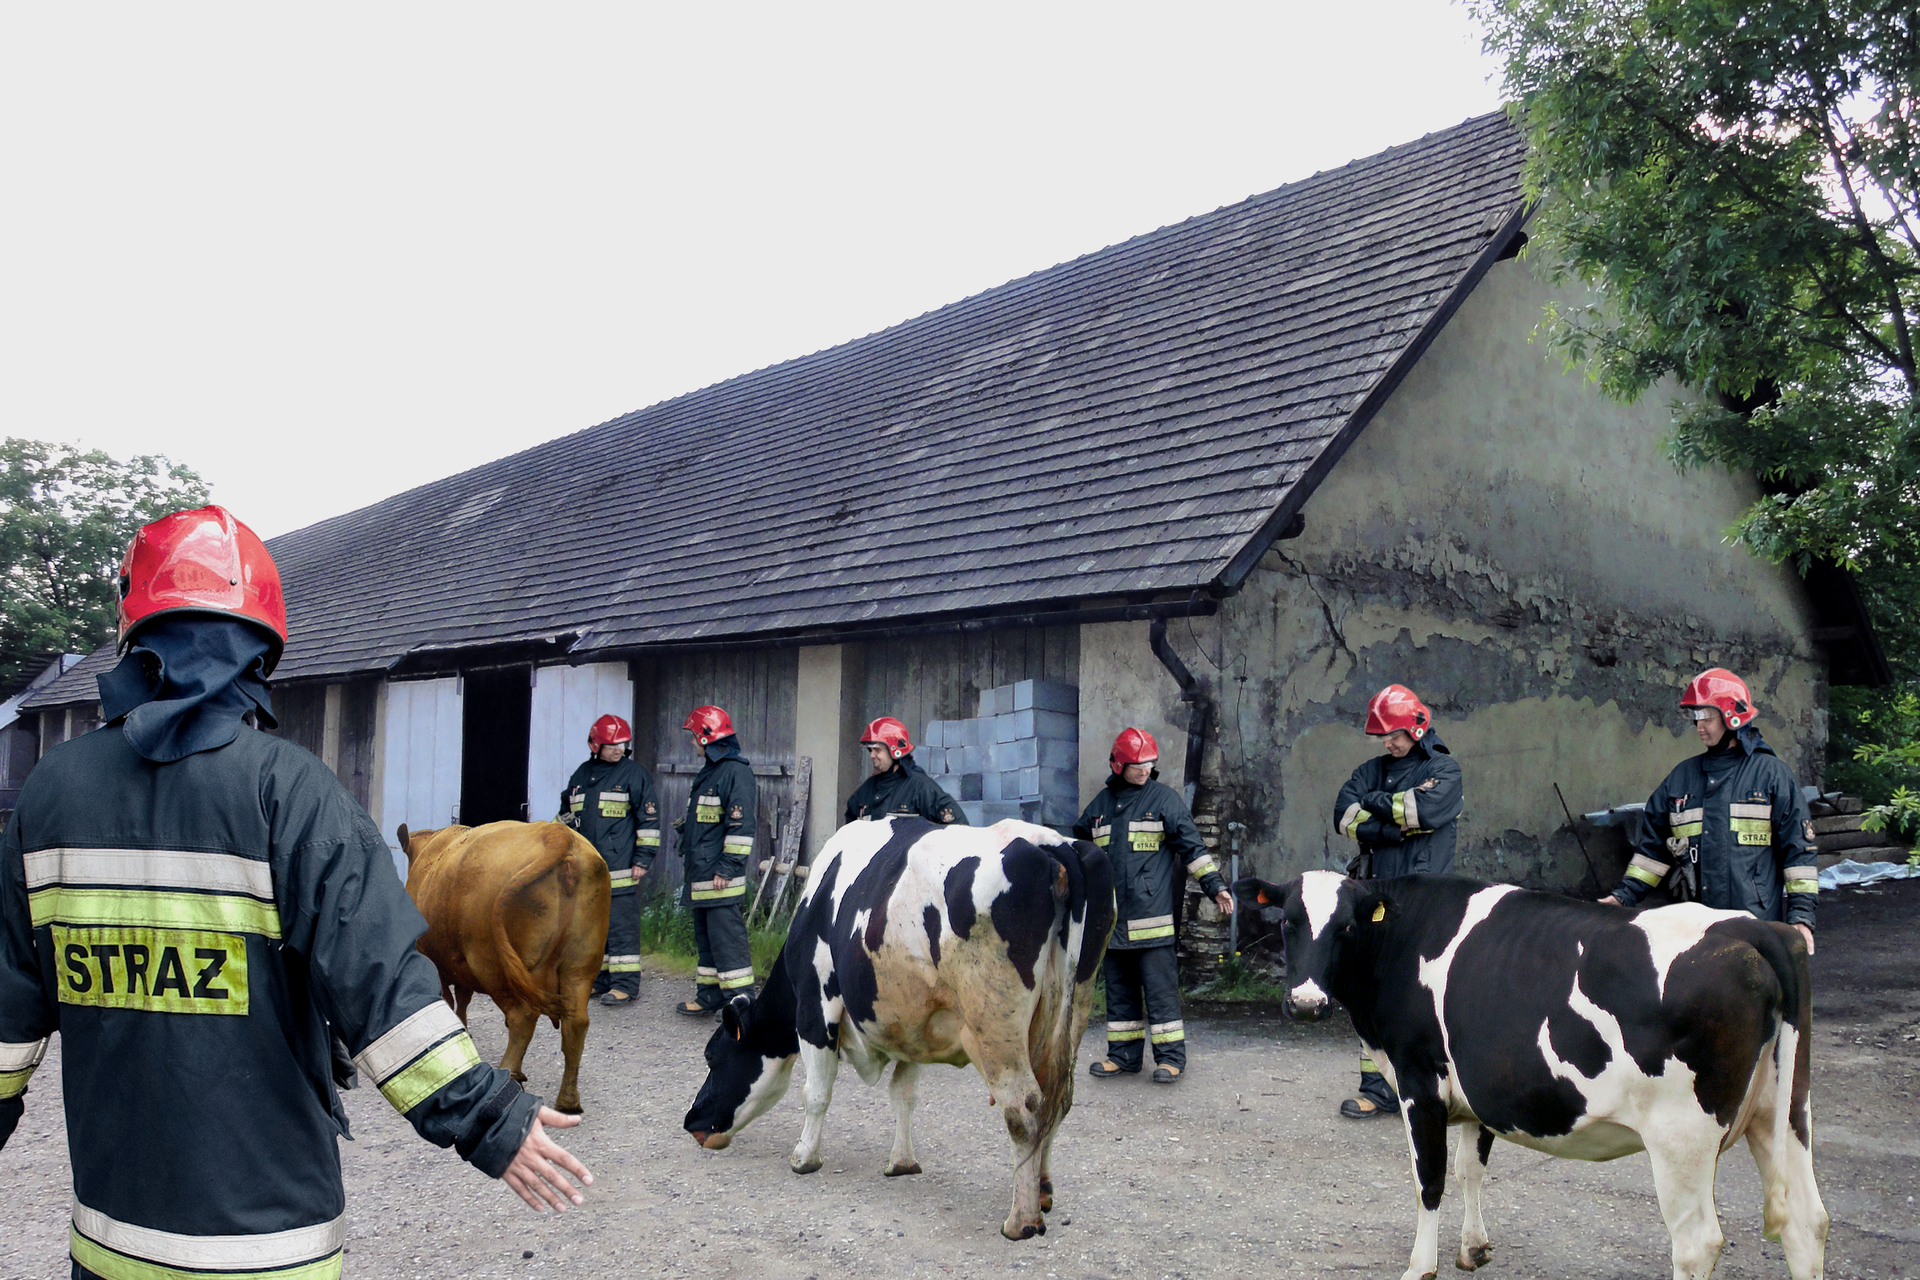 Strażacy otaczają krowy. W tle budynki gospodarcze